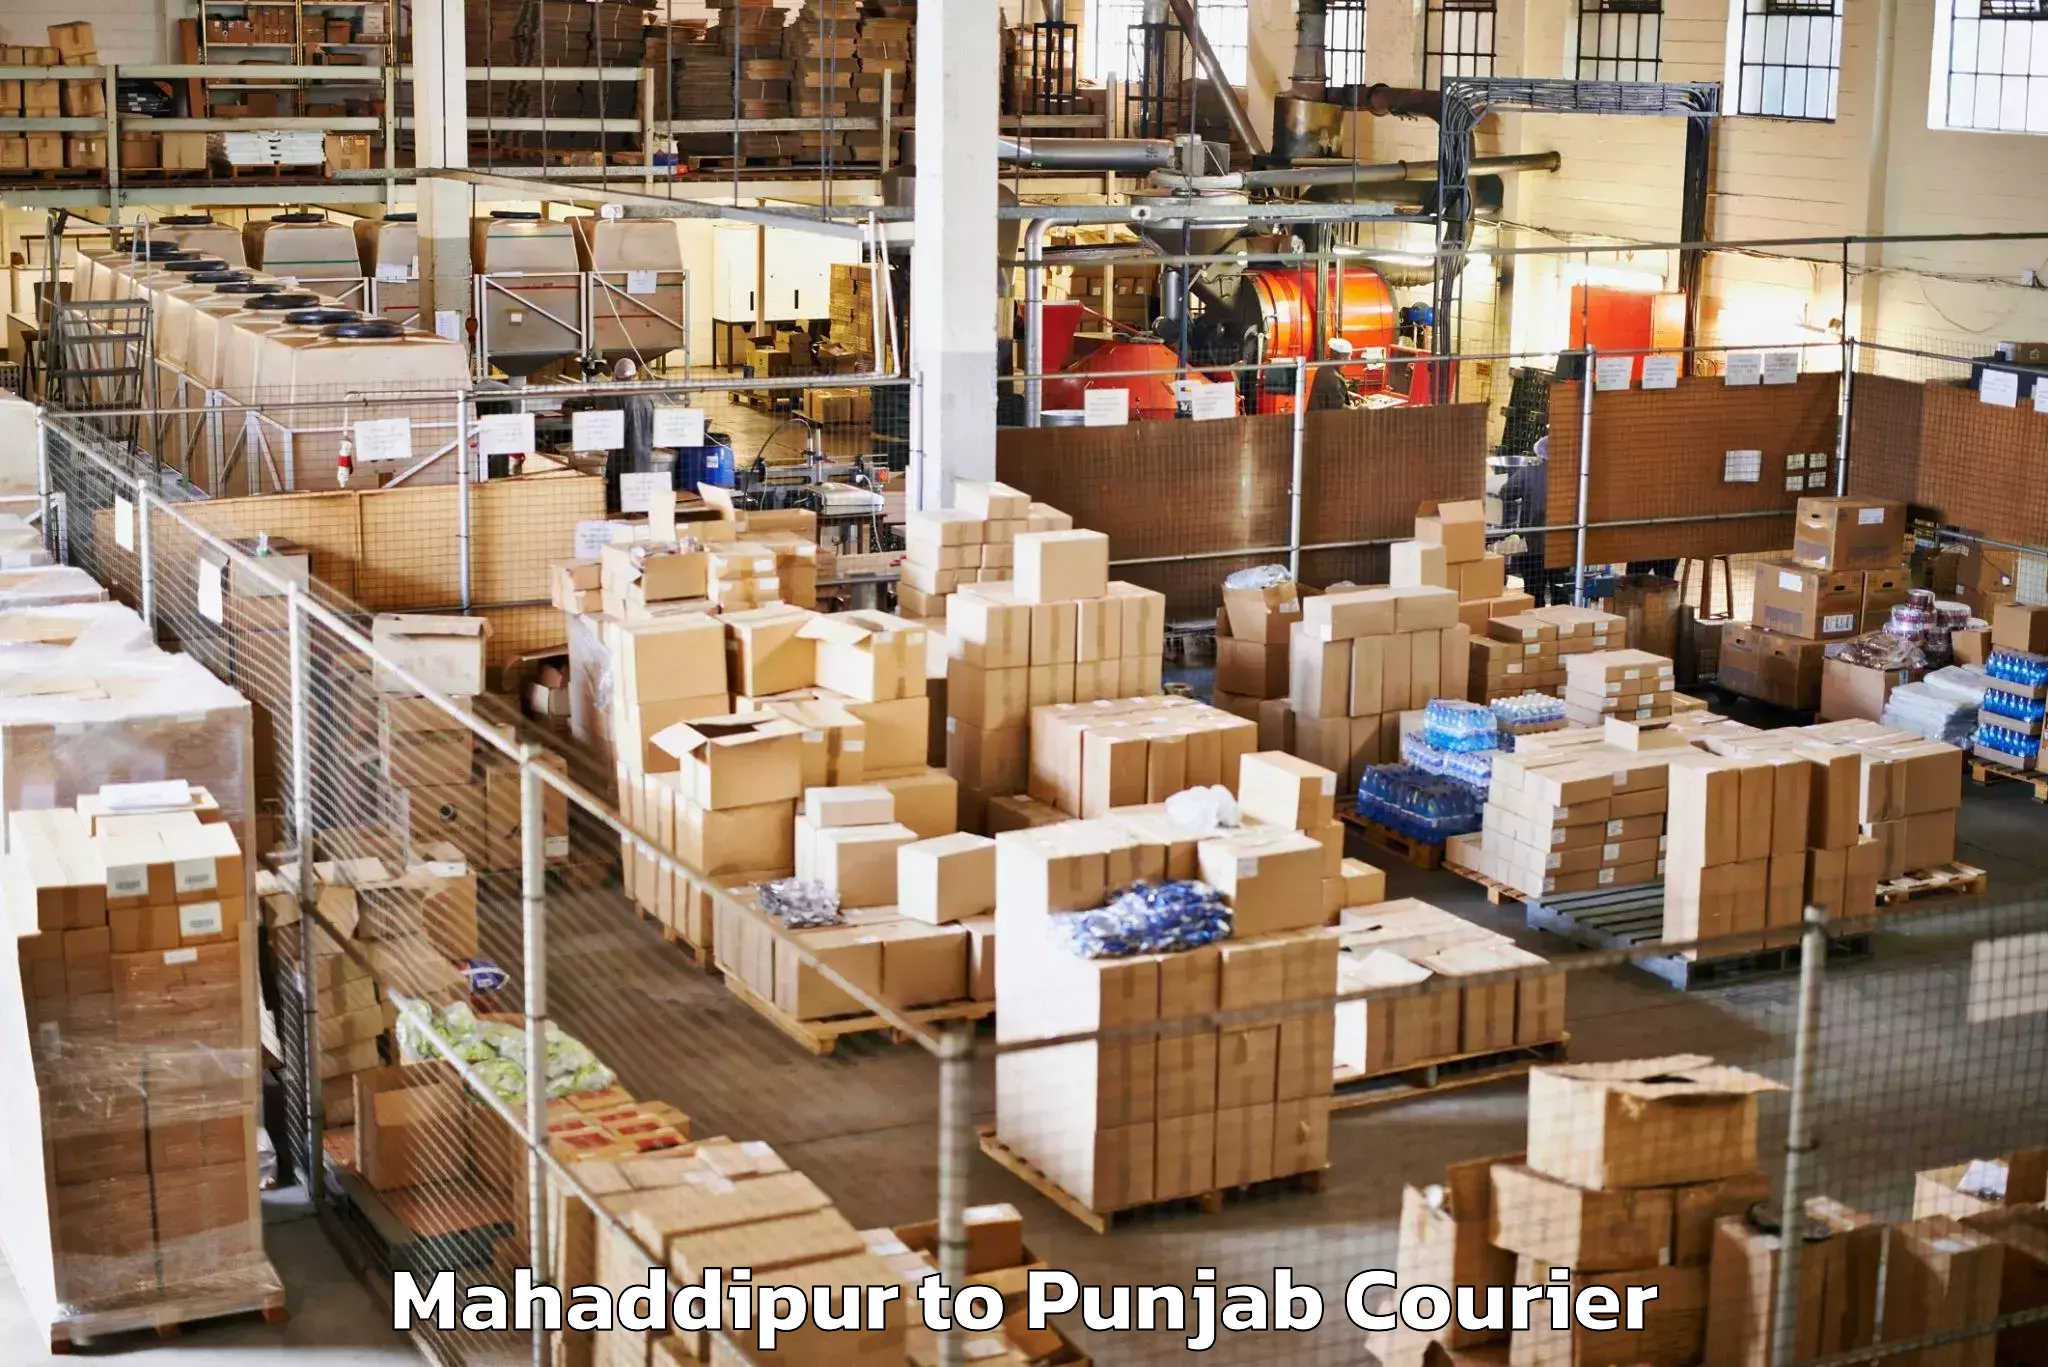 Luggage shipping management Mahaddipur to Fazilka